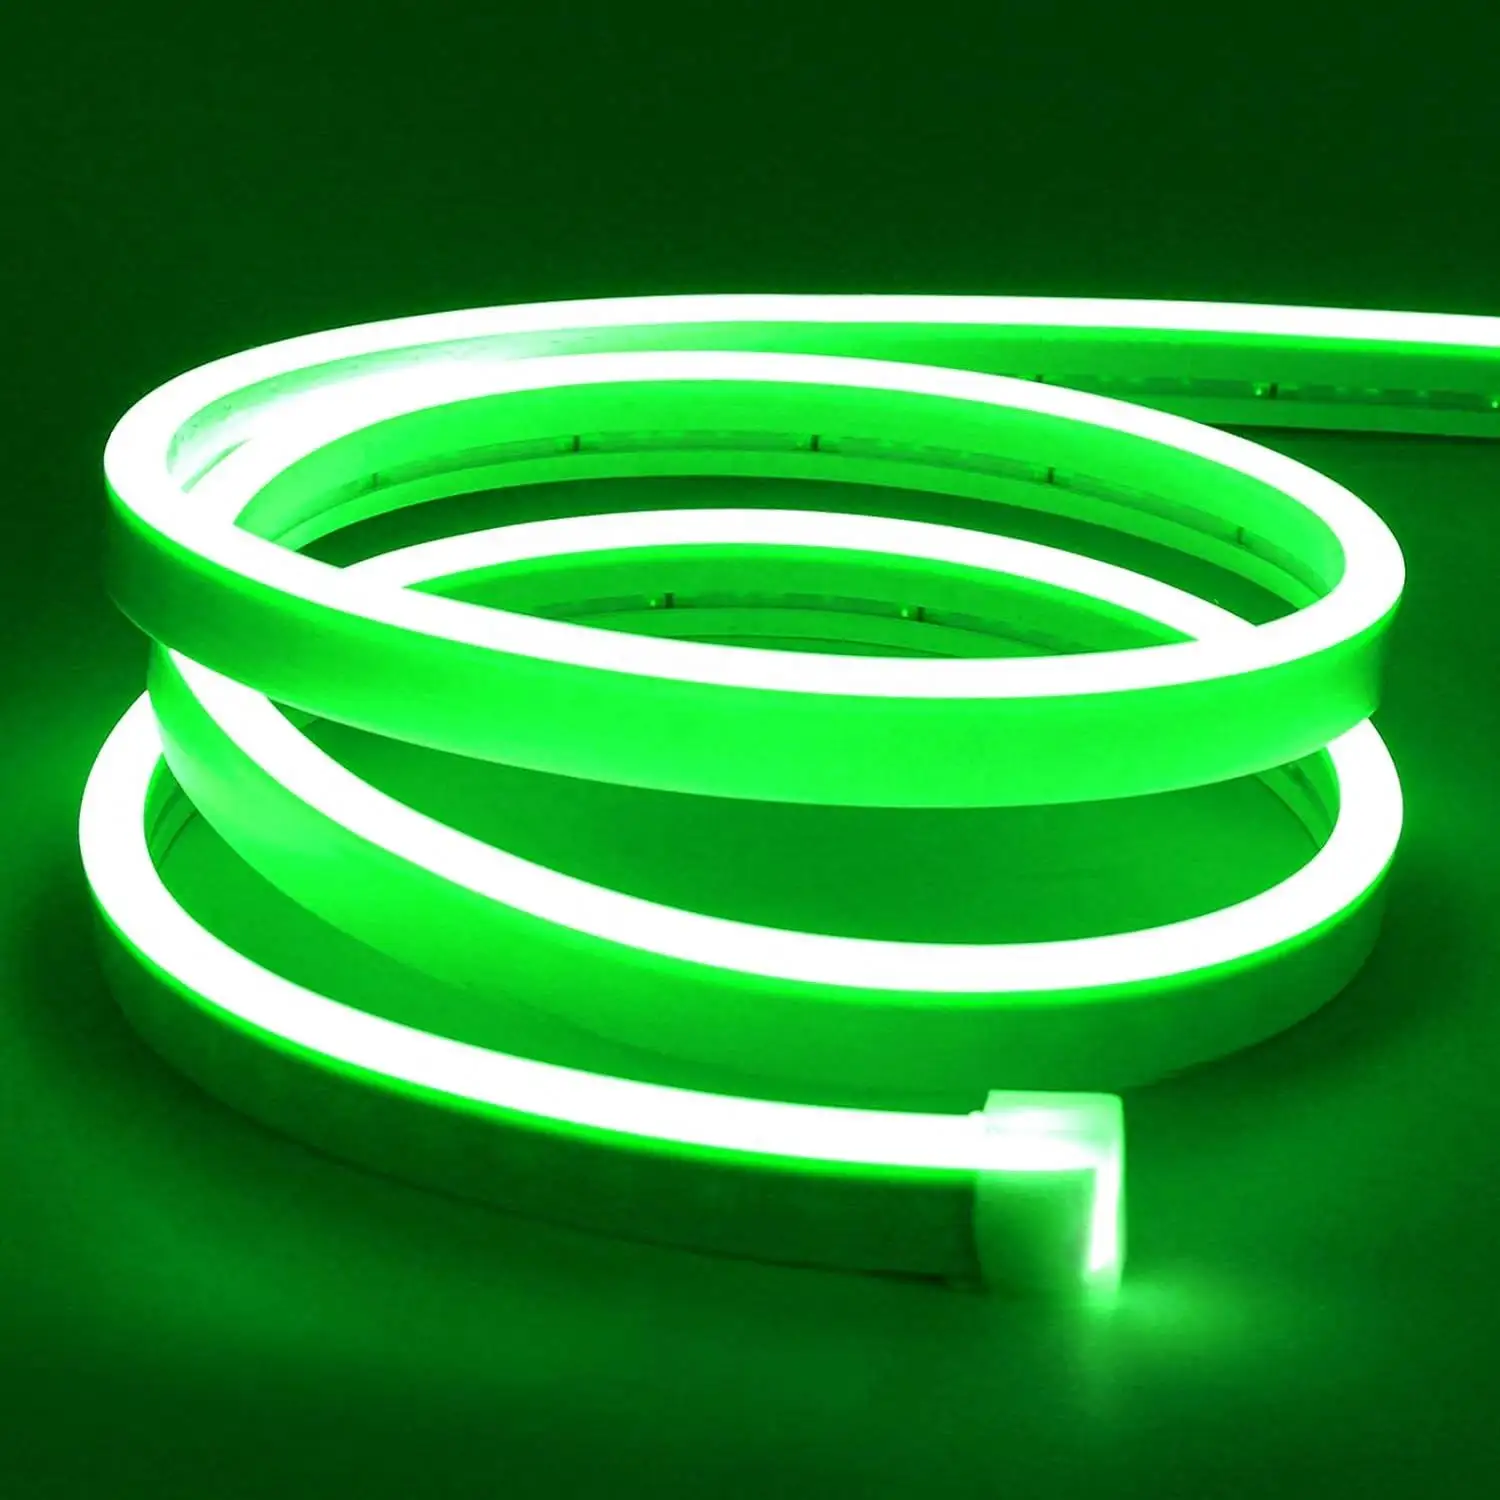 Led Neon dây Đèn Ngoài Trời RGB, neon ánh sáng Dải có thể kết nối, nhiều màu connectable Neon chiếu sáng cho bảng hiệu, biển báo, Đảng